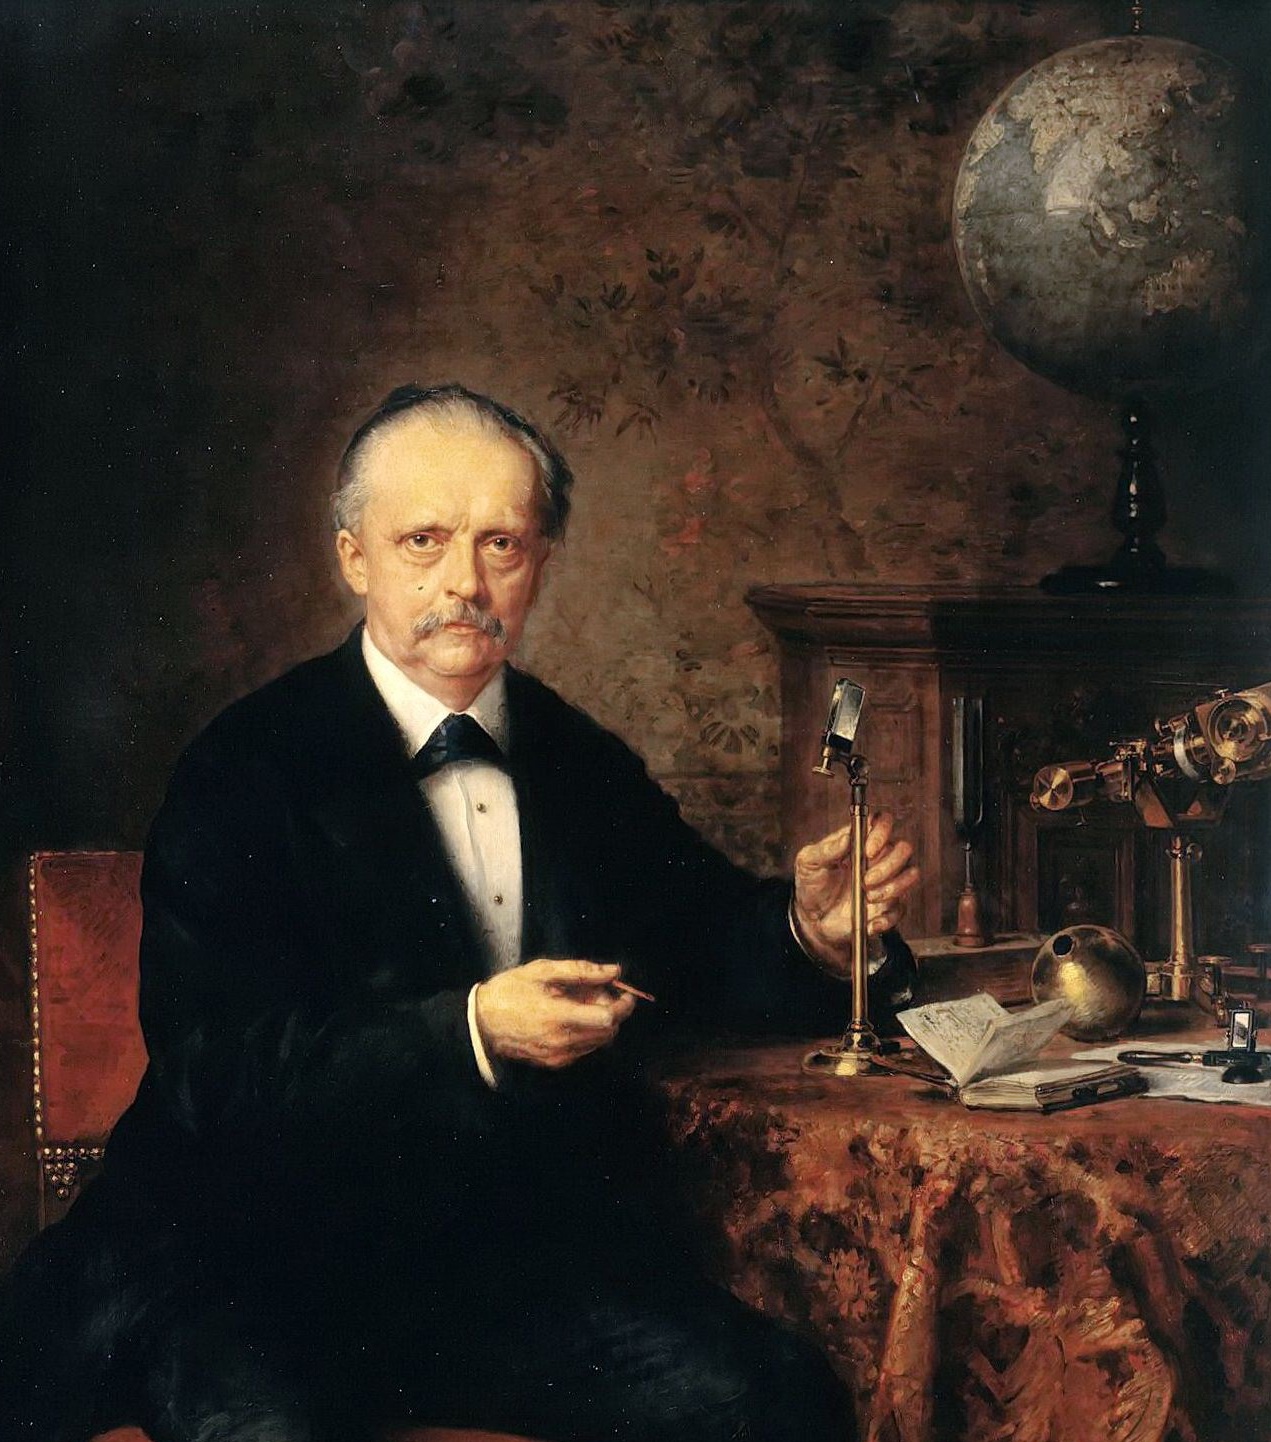 Portrait of Hermann von Helmholtz by Ludwig Knauss 1881 (detail)